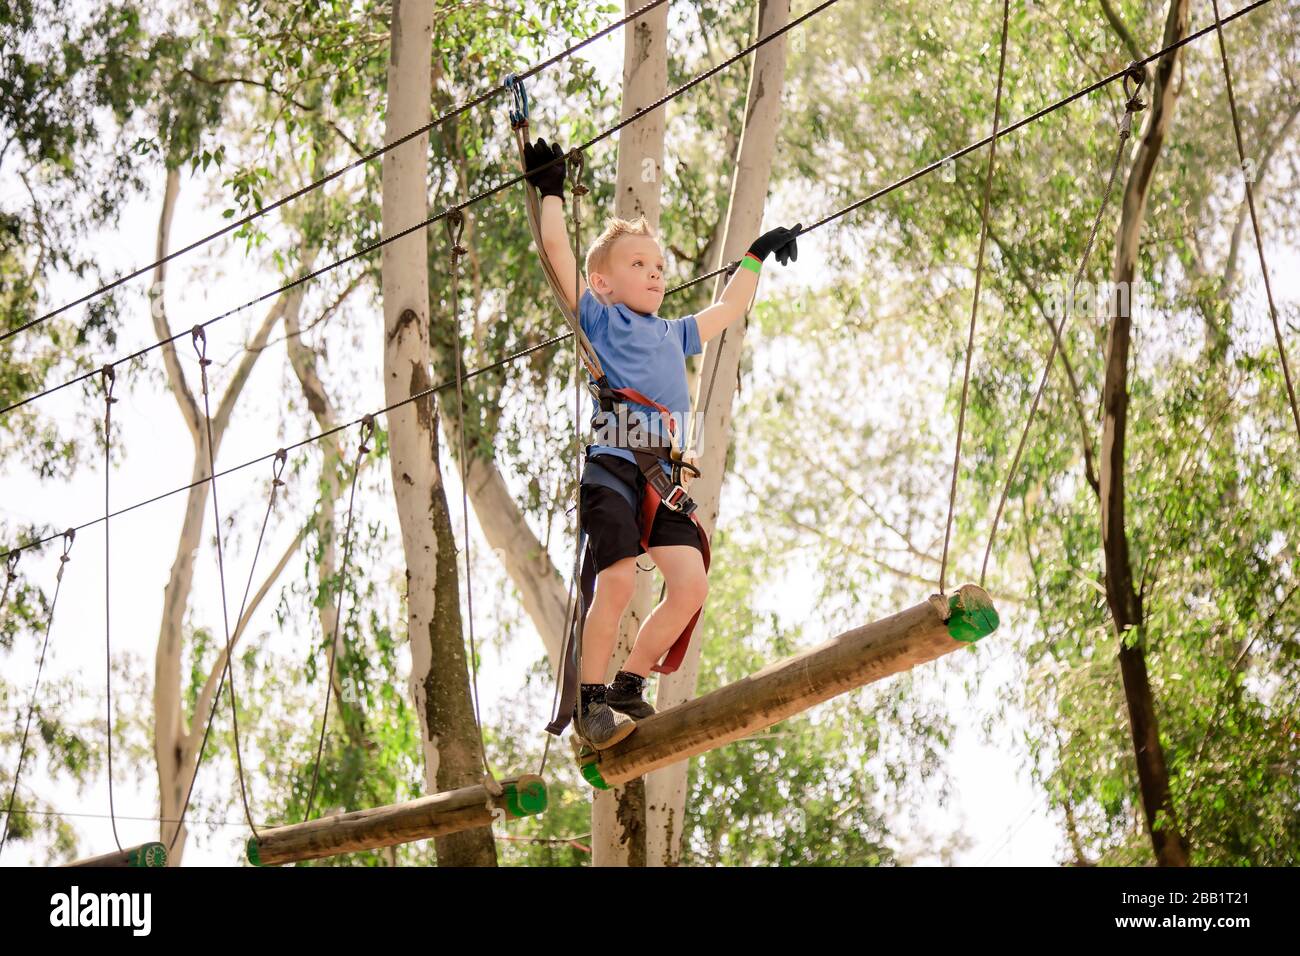 Photo couleur d'un jeune beau garçon grimpant sur des cordes suspendues ou des câbles dans un parc extérieur. Également appelée tyrolienne de câble. Banque D'Images